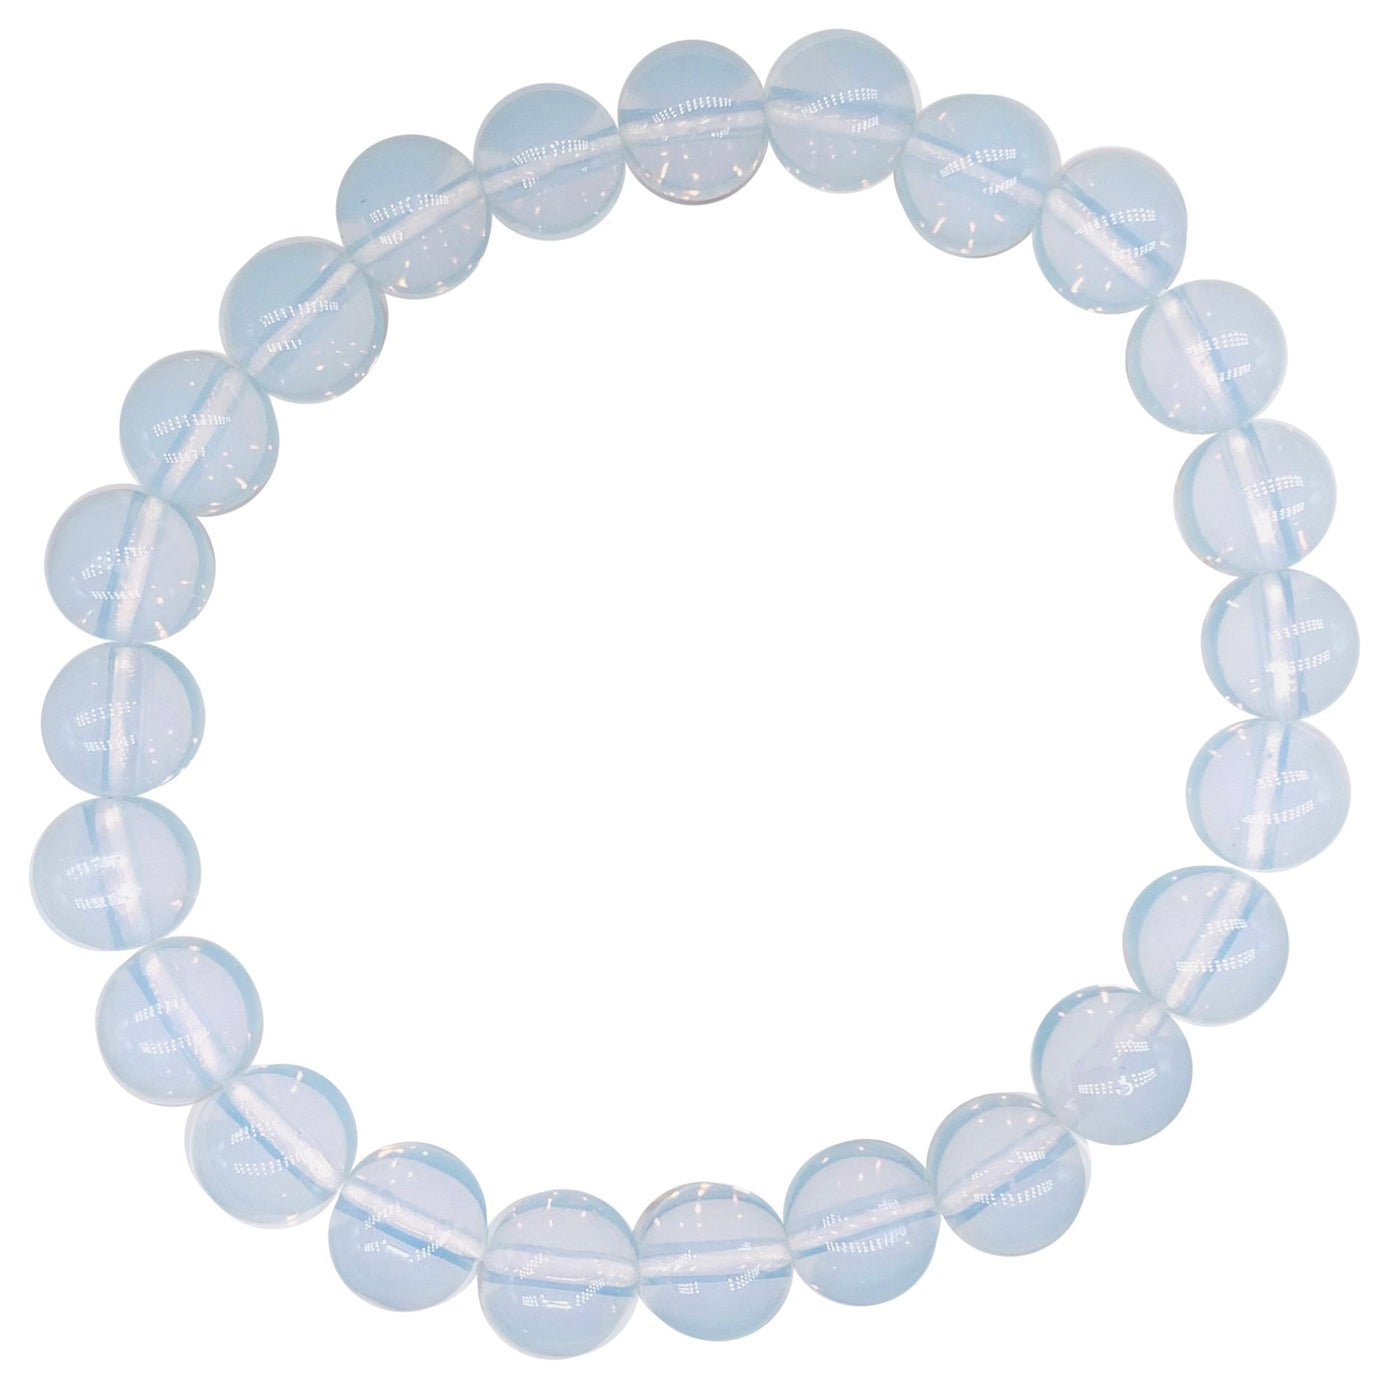 Opalite Crystal Bracelet for Women, Men | Bead Bracelet with Meaning | Healing Gemstone Bracelet | White Crystal Bead Bracelet | Wholesale Dropshipping Crystal Bracelets